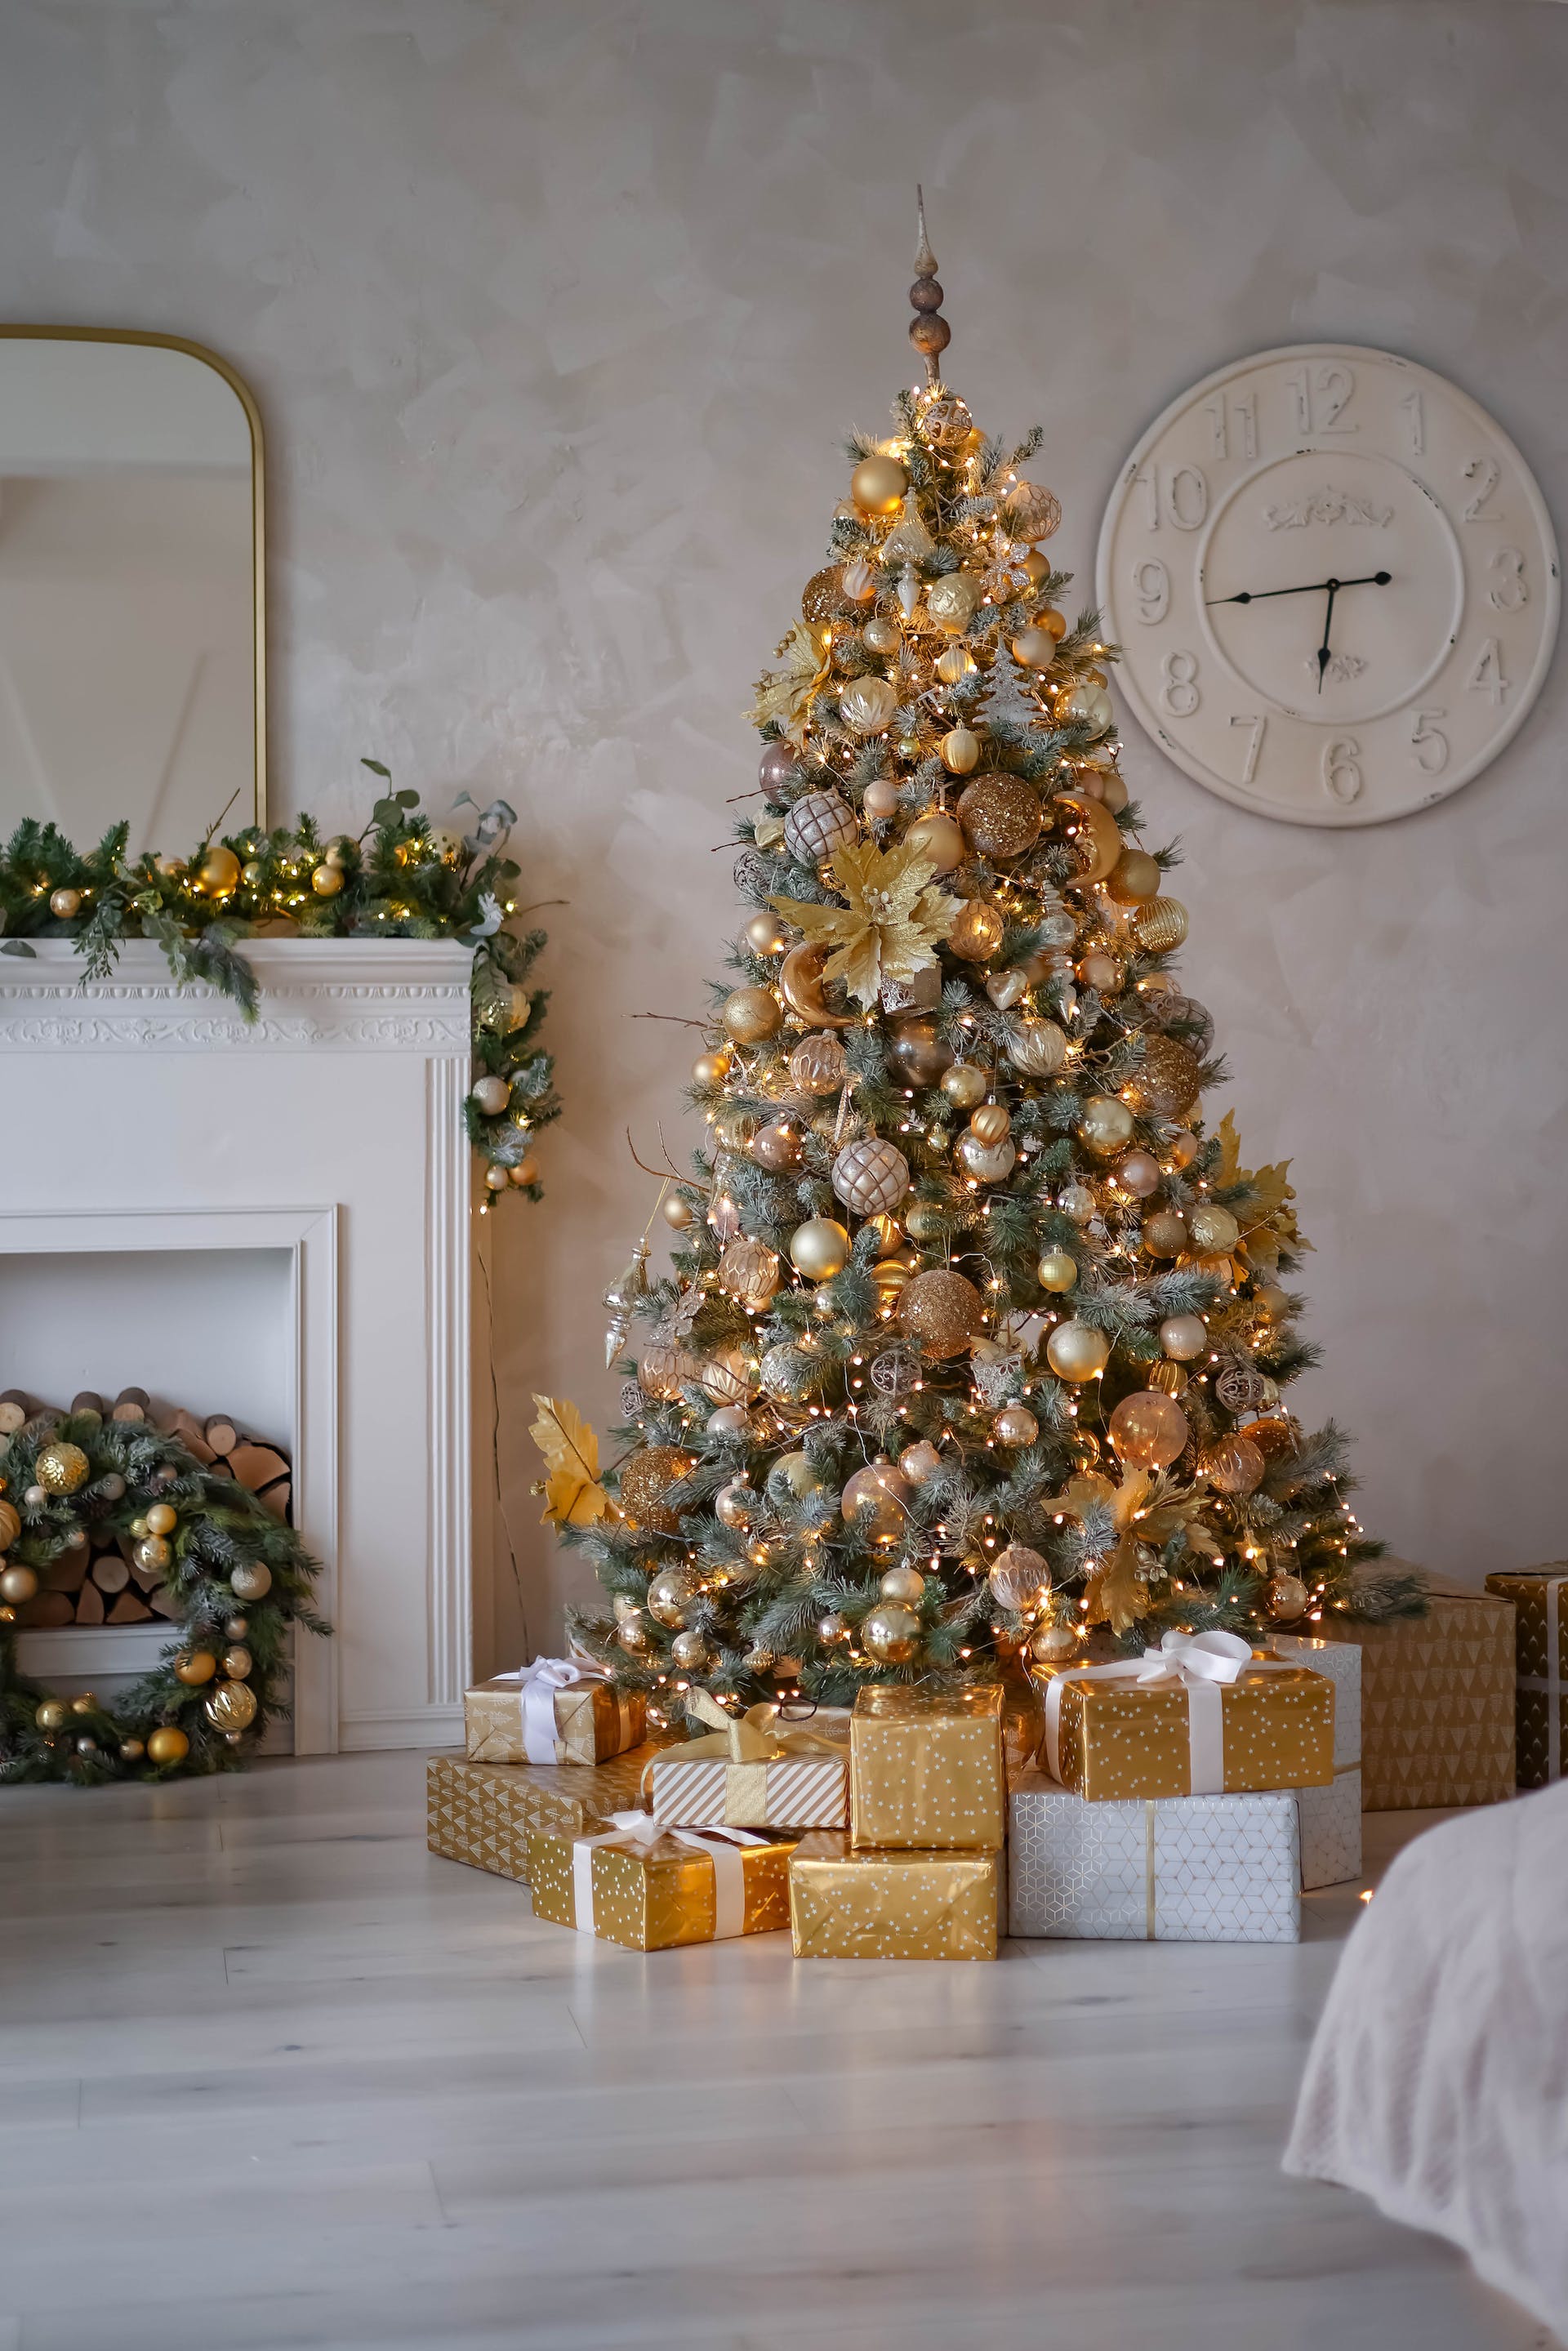 Un árbol de Navidad con regalos | Fuente: Pexels